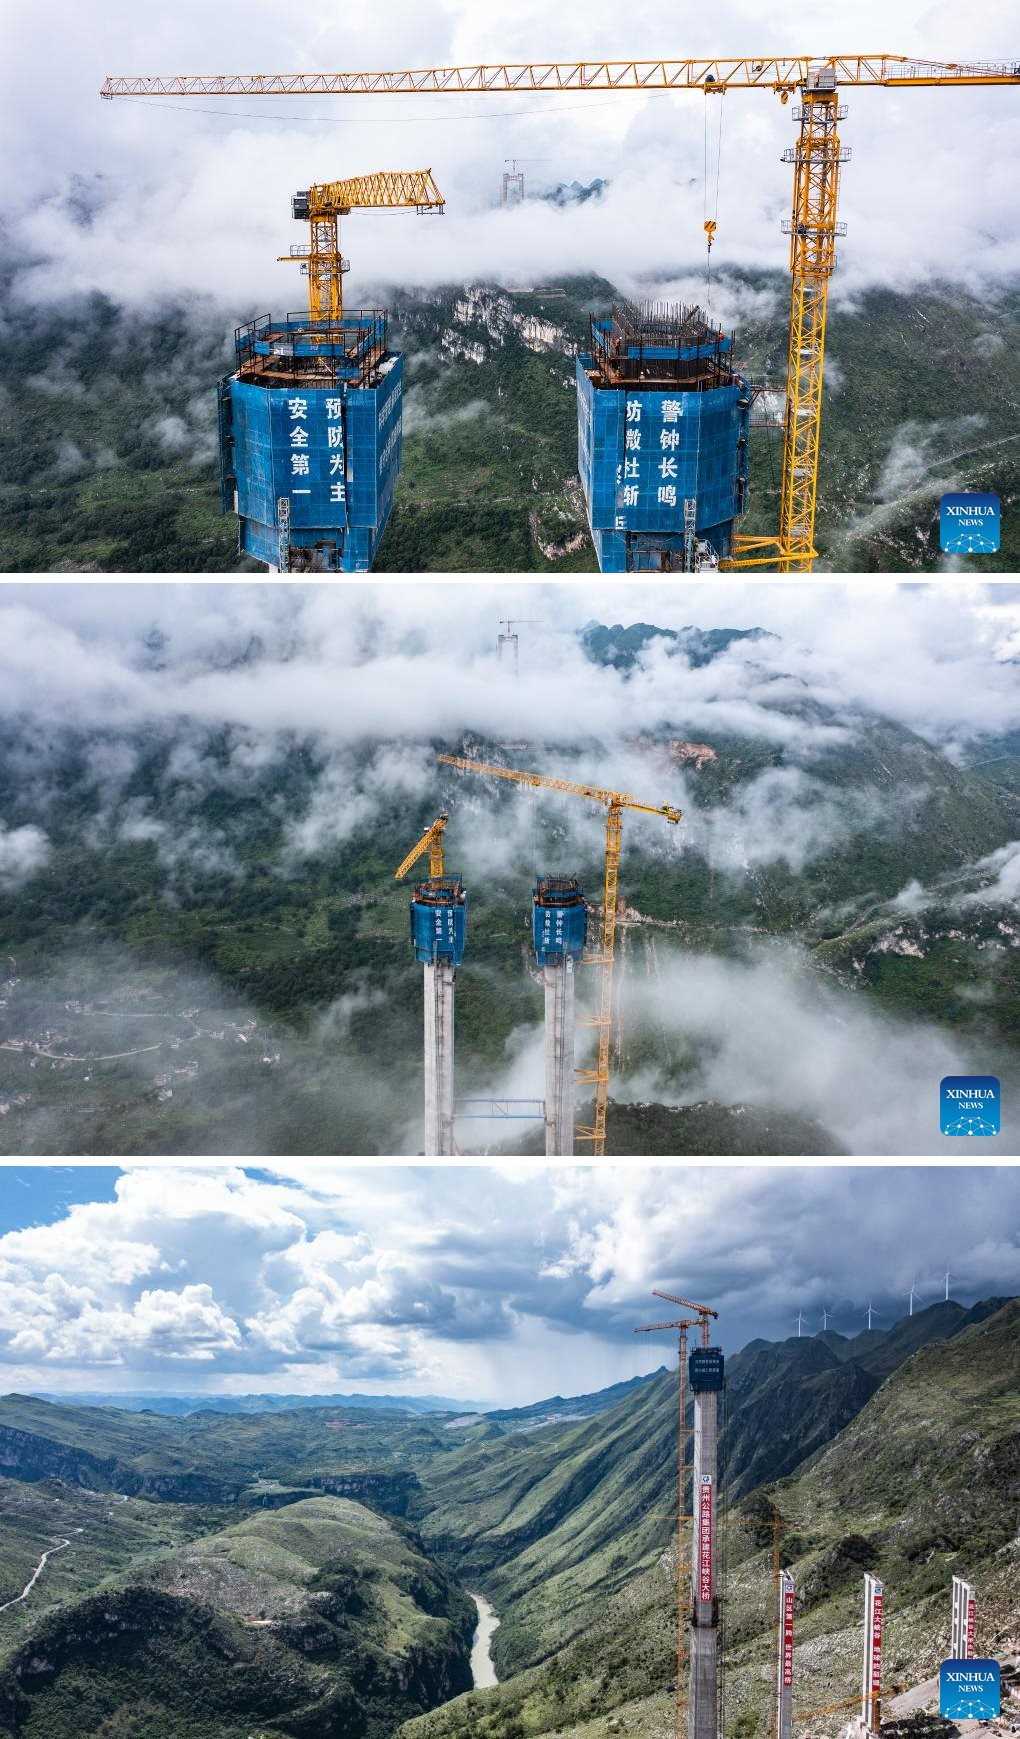 Trung Quốc sắp hoàn thành cây cầu xuyên núi cao nhất thế giới: Treo trong mây ở độ cao hơn 600 m, bắc qua hai vách đá cực hiểm trở - Ảnh 2.